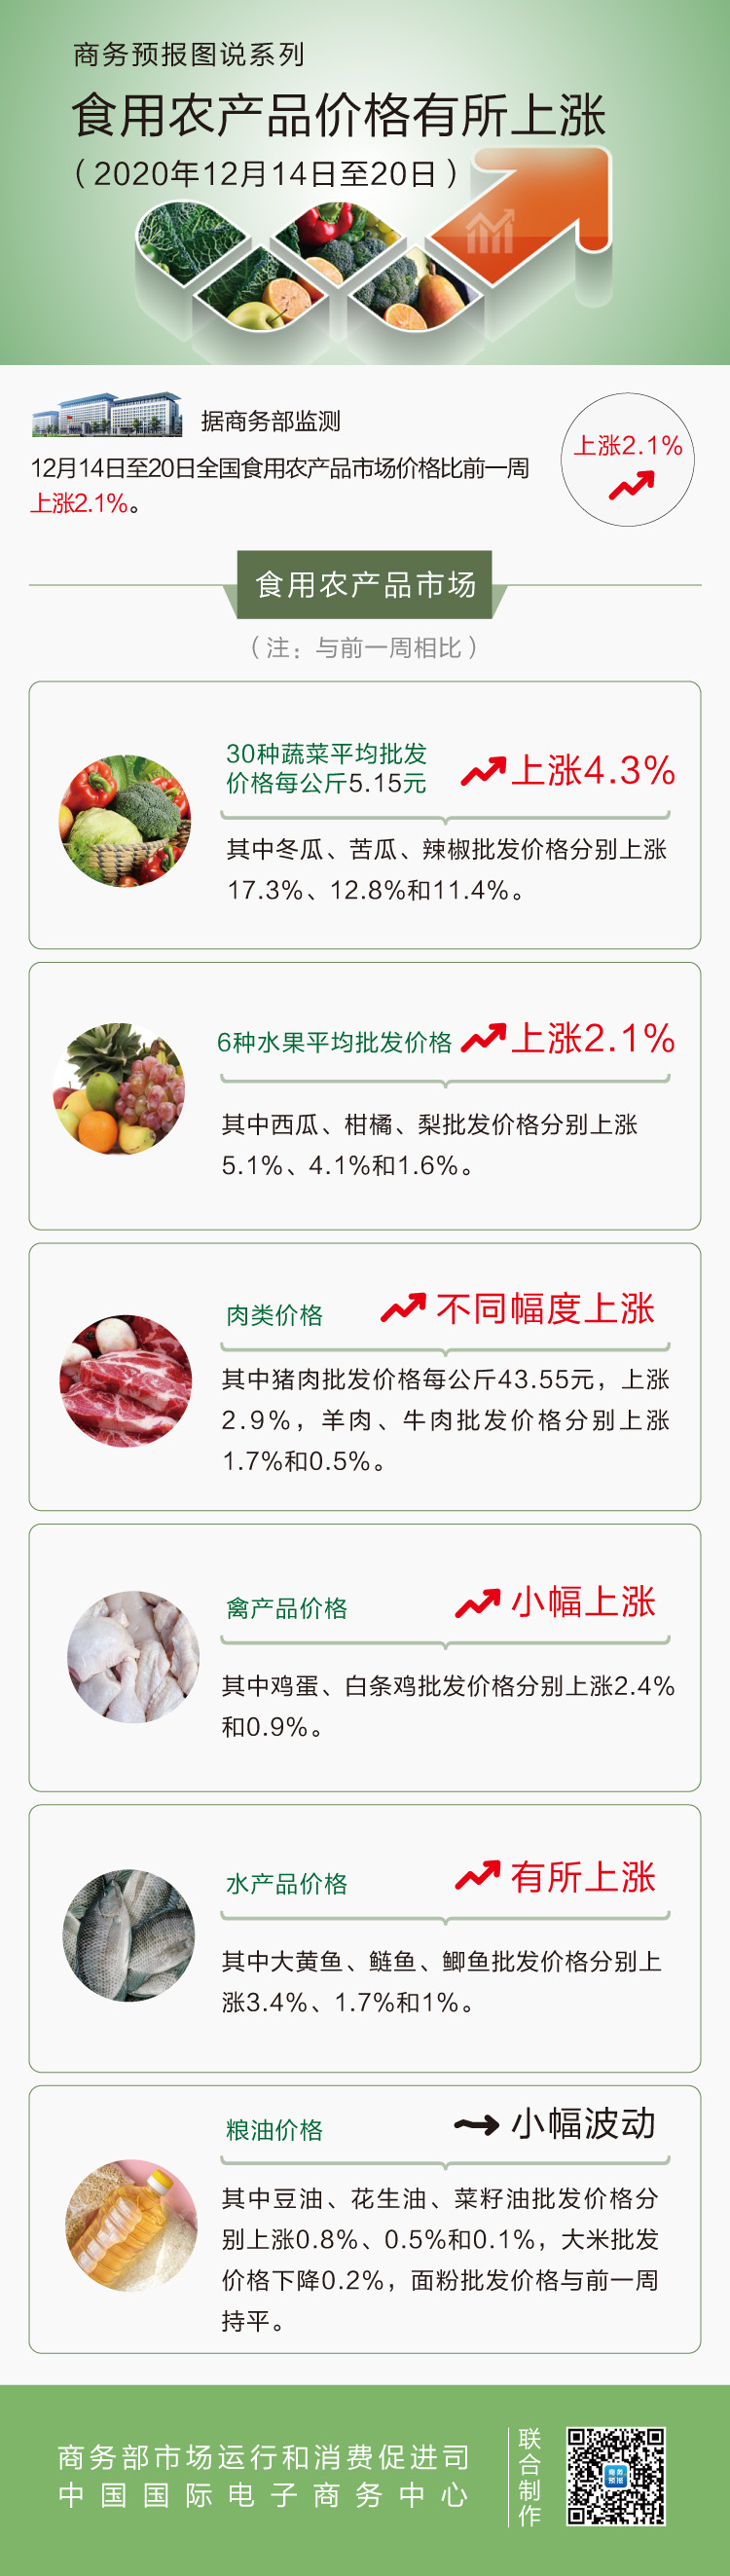 12月第3周肉类价格不同幅度上涨  粮油价格小幅波动